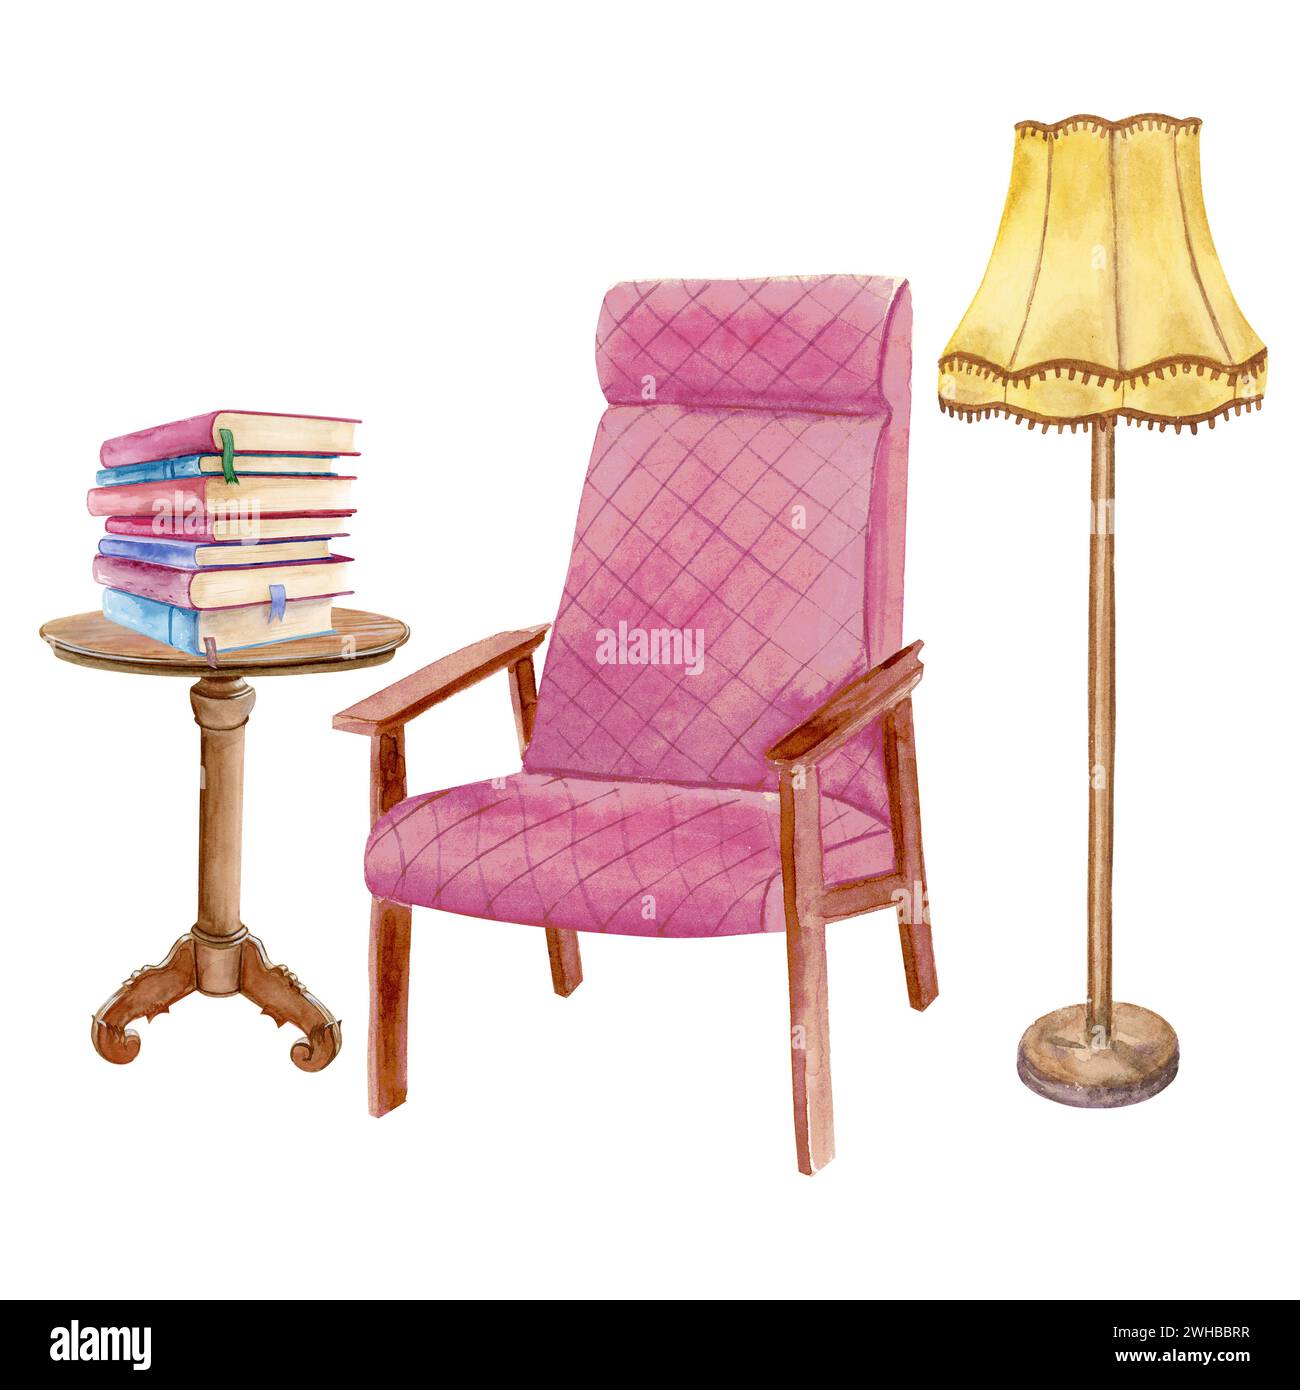 Composition aquarelle d'une chaise rose douce, petite table de livre avec une pile de livres et un lampadaire jaune Banque D'Images